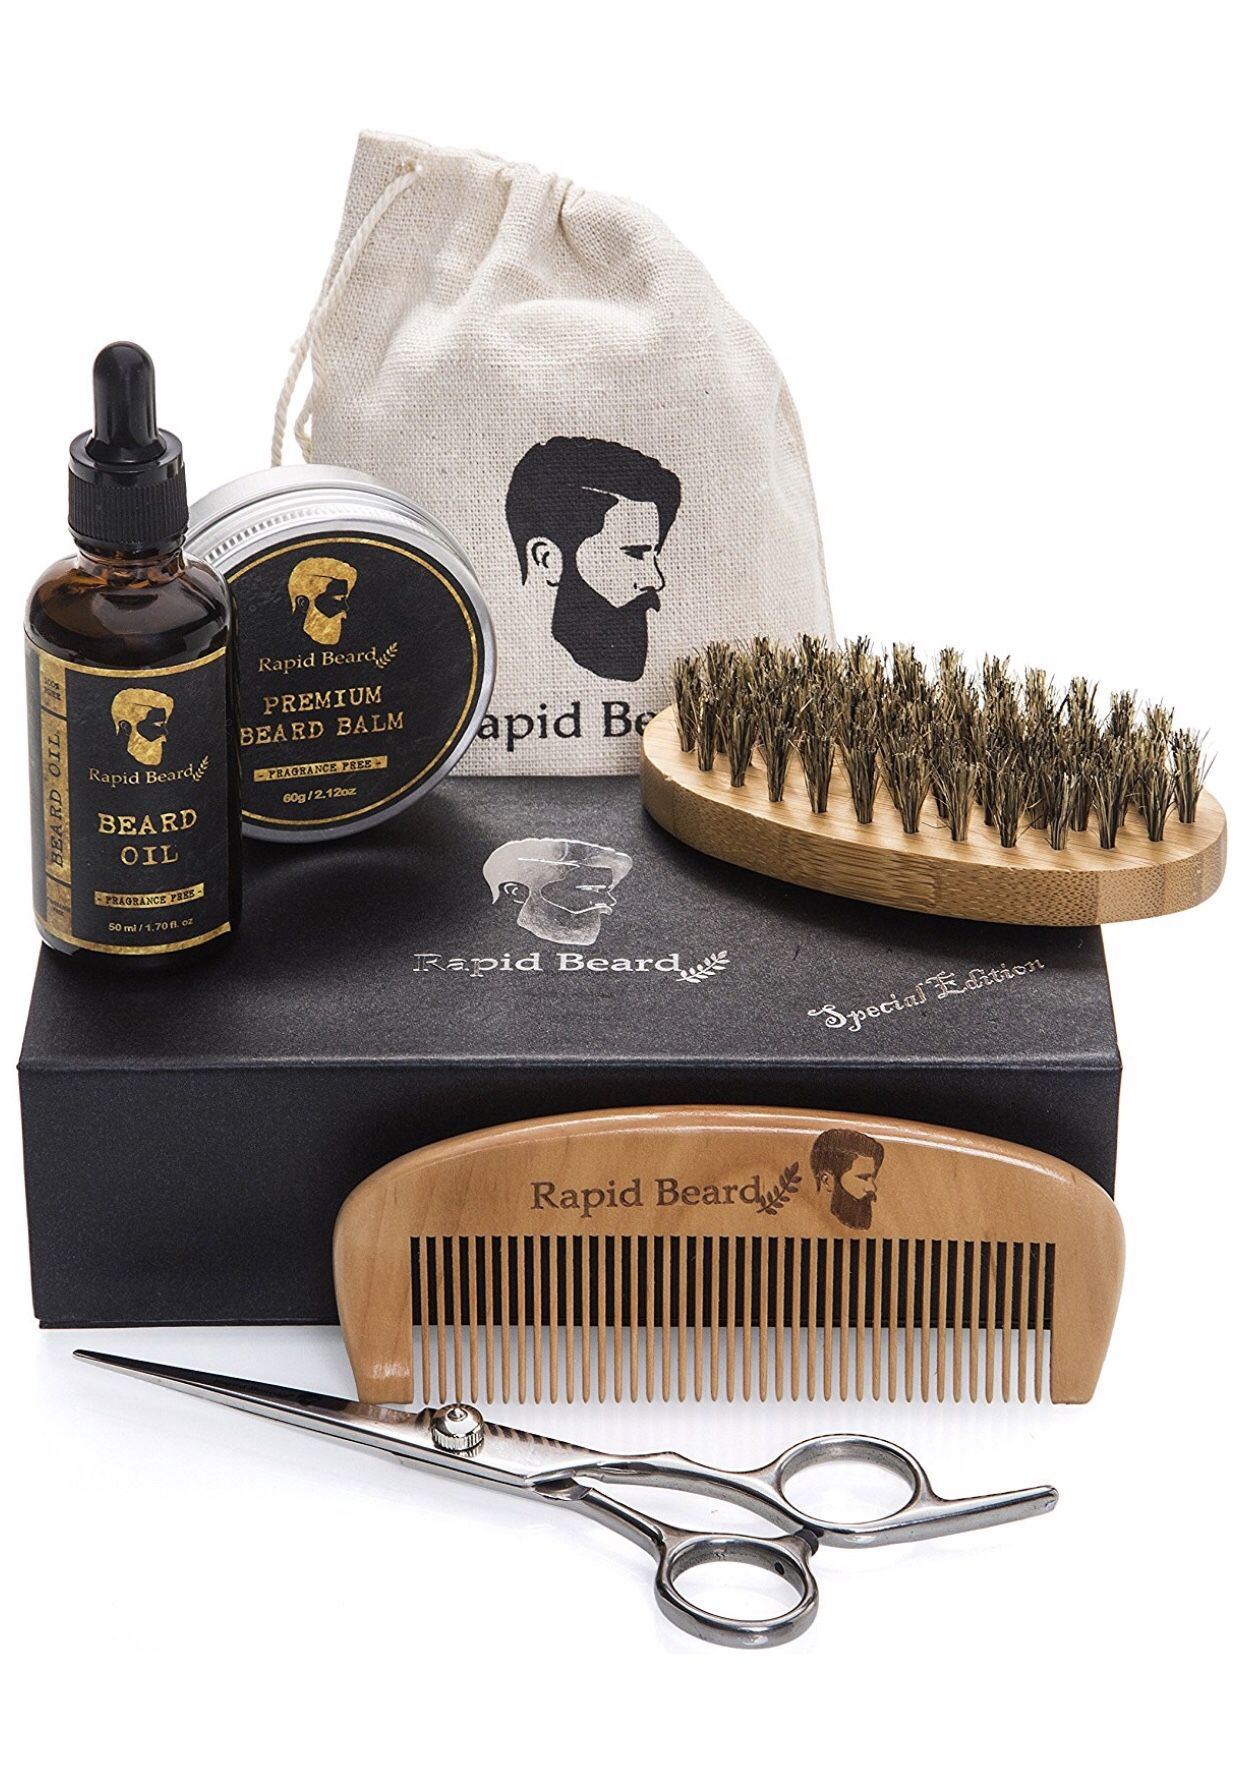 Beard Grooming & Trimming Kit for Men Care (#1 Amazon Best Seller)